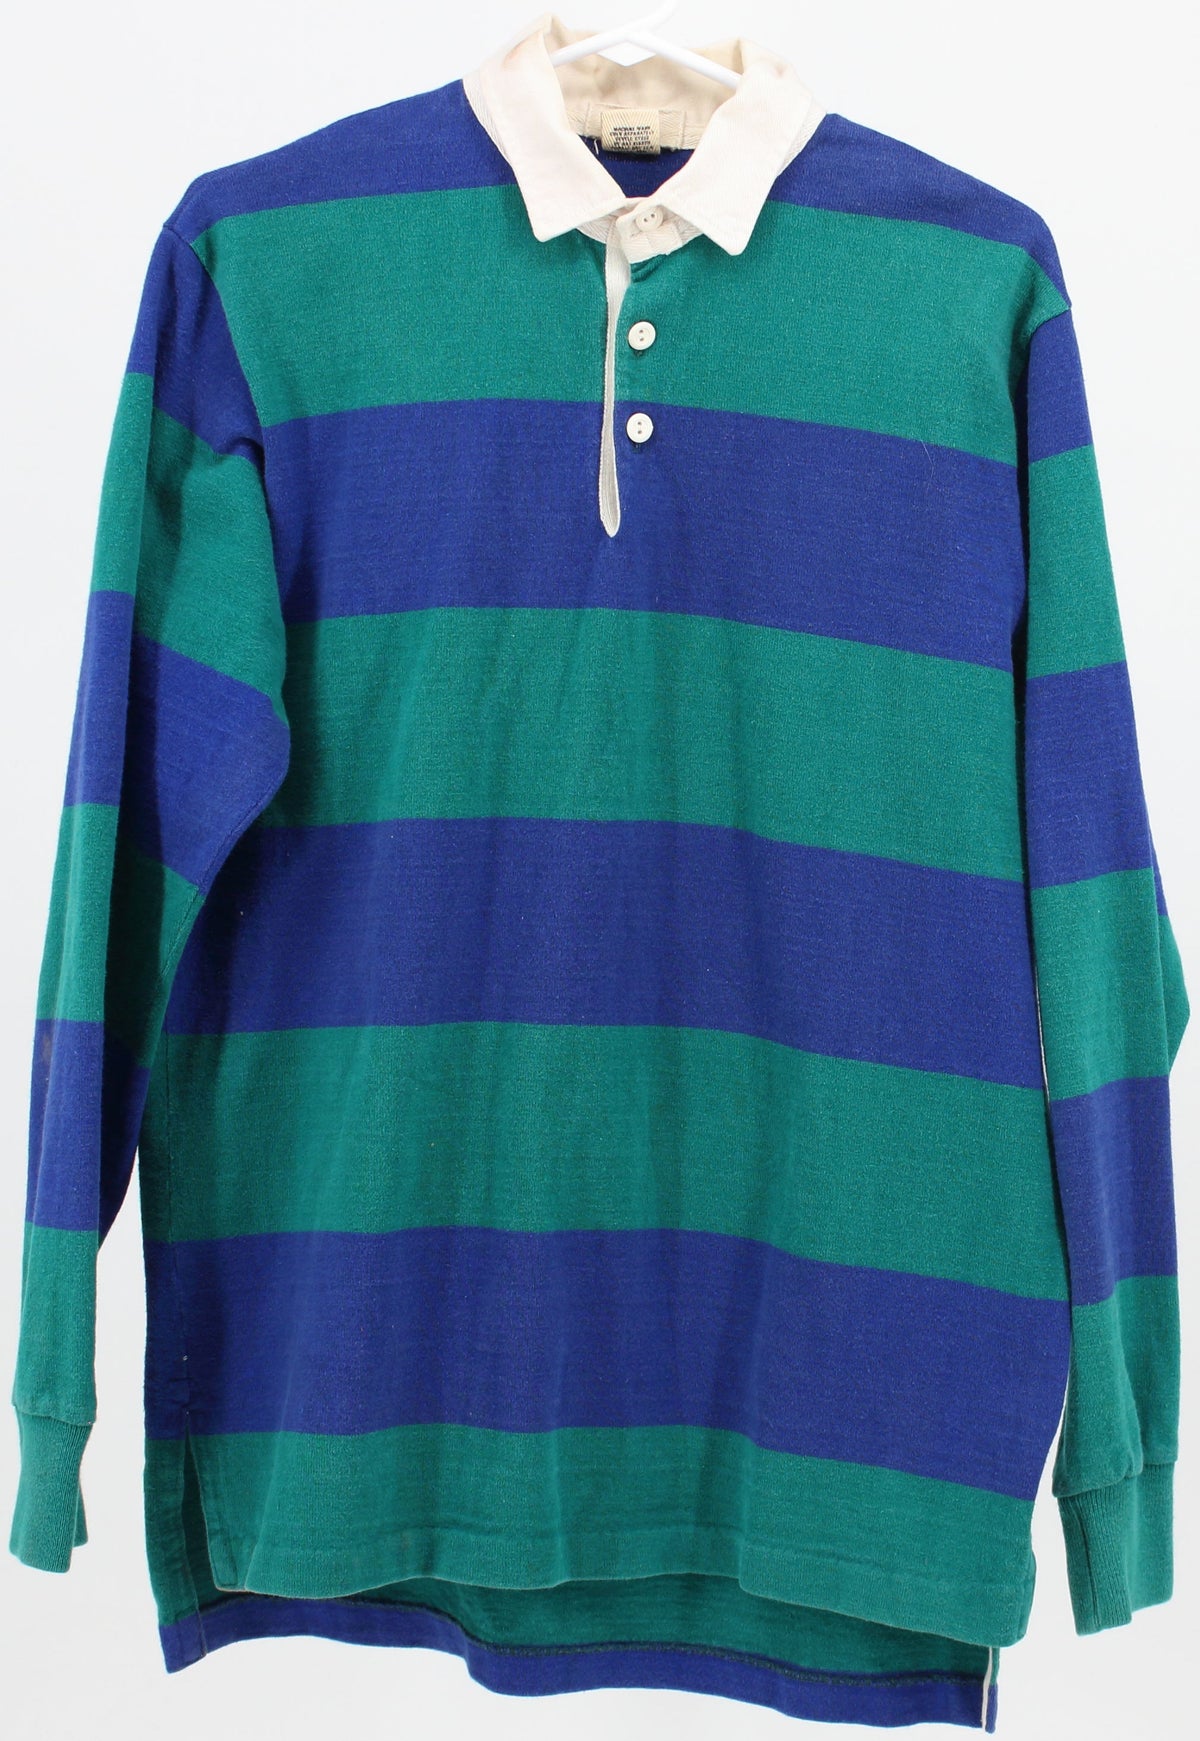 Gap Blue and Green Long Sleeve Golf Shirt